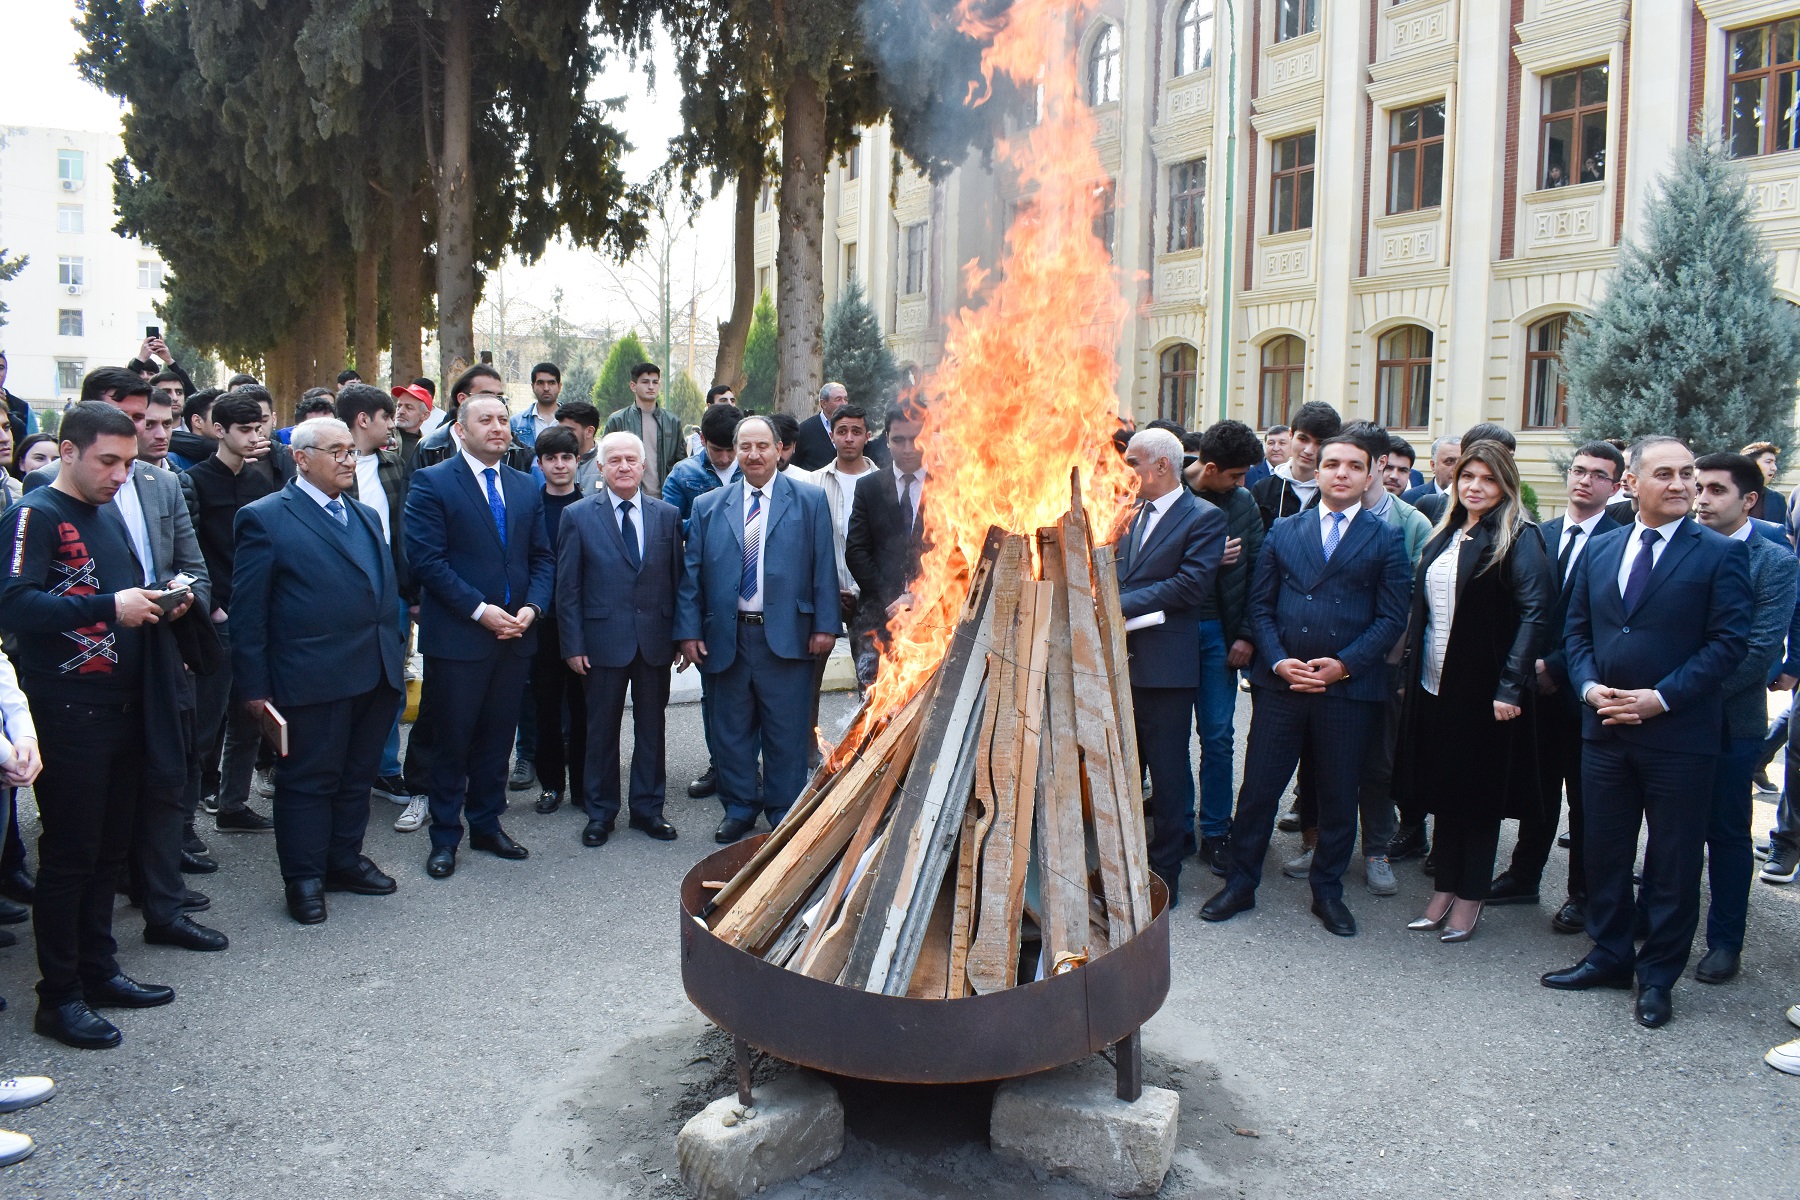 Novruz bonfire lit in ADAU